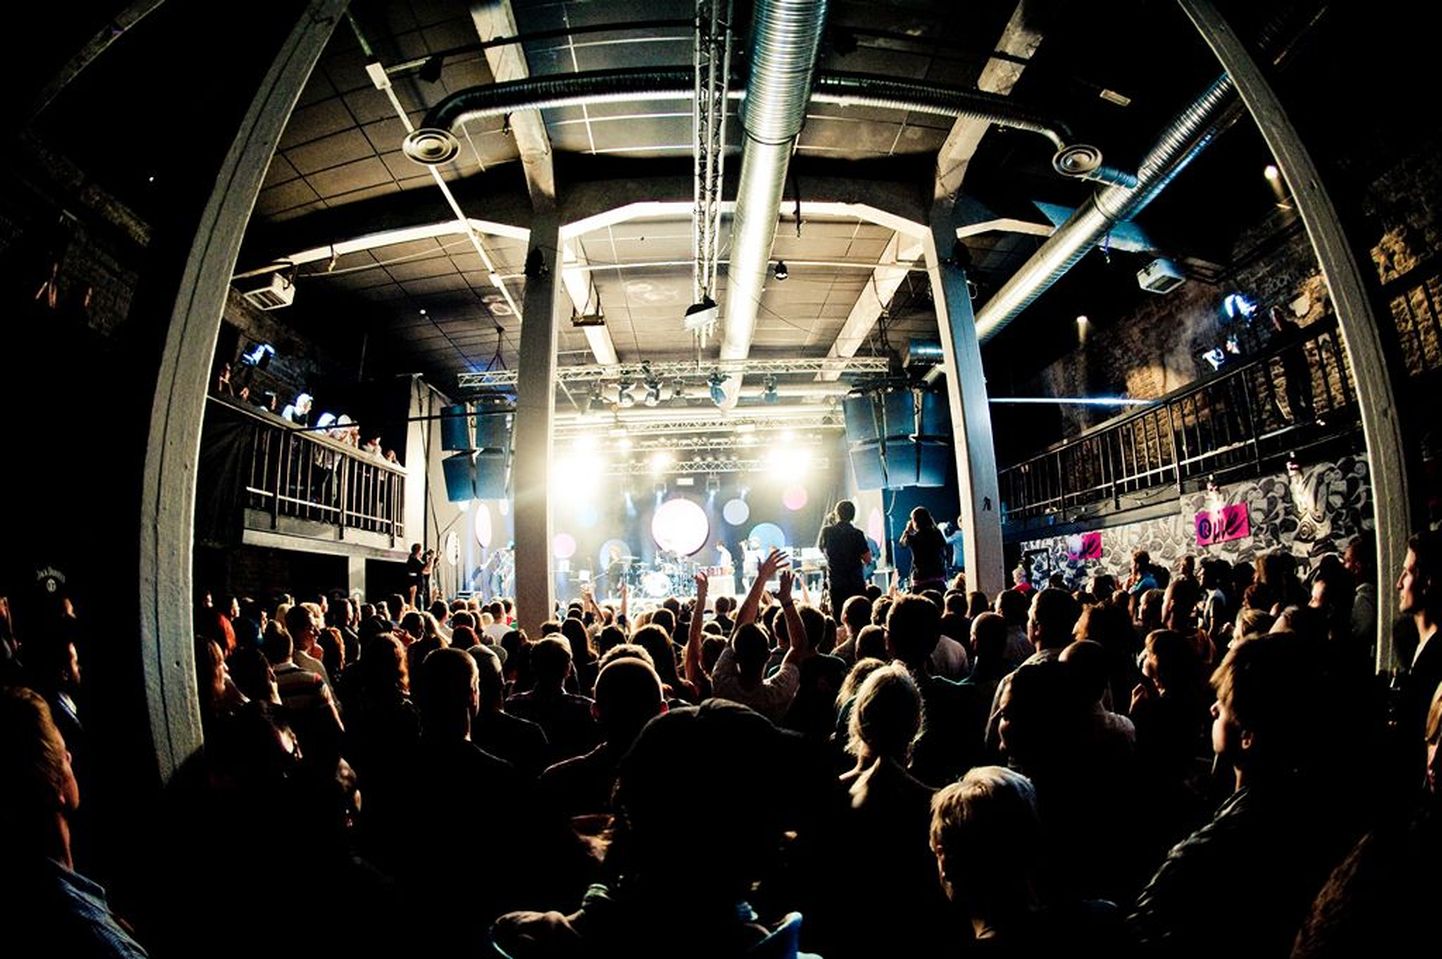 Põhja-Tallinn esitles Rock Café's oma uut albumit.